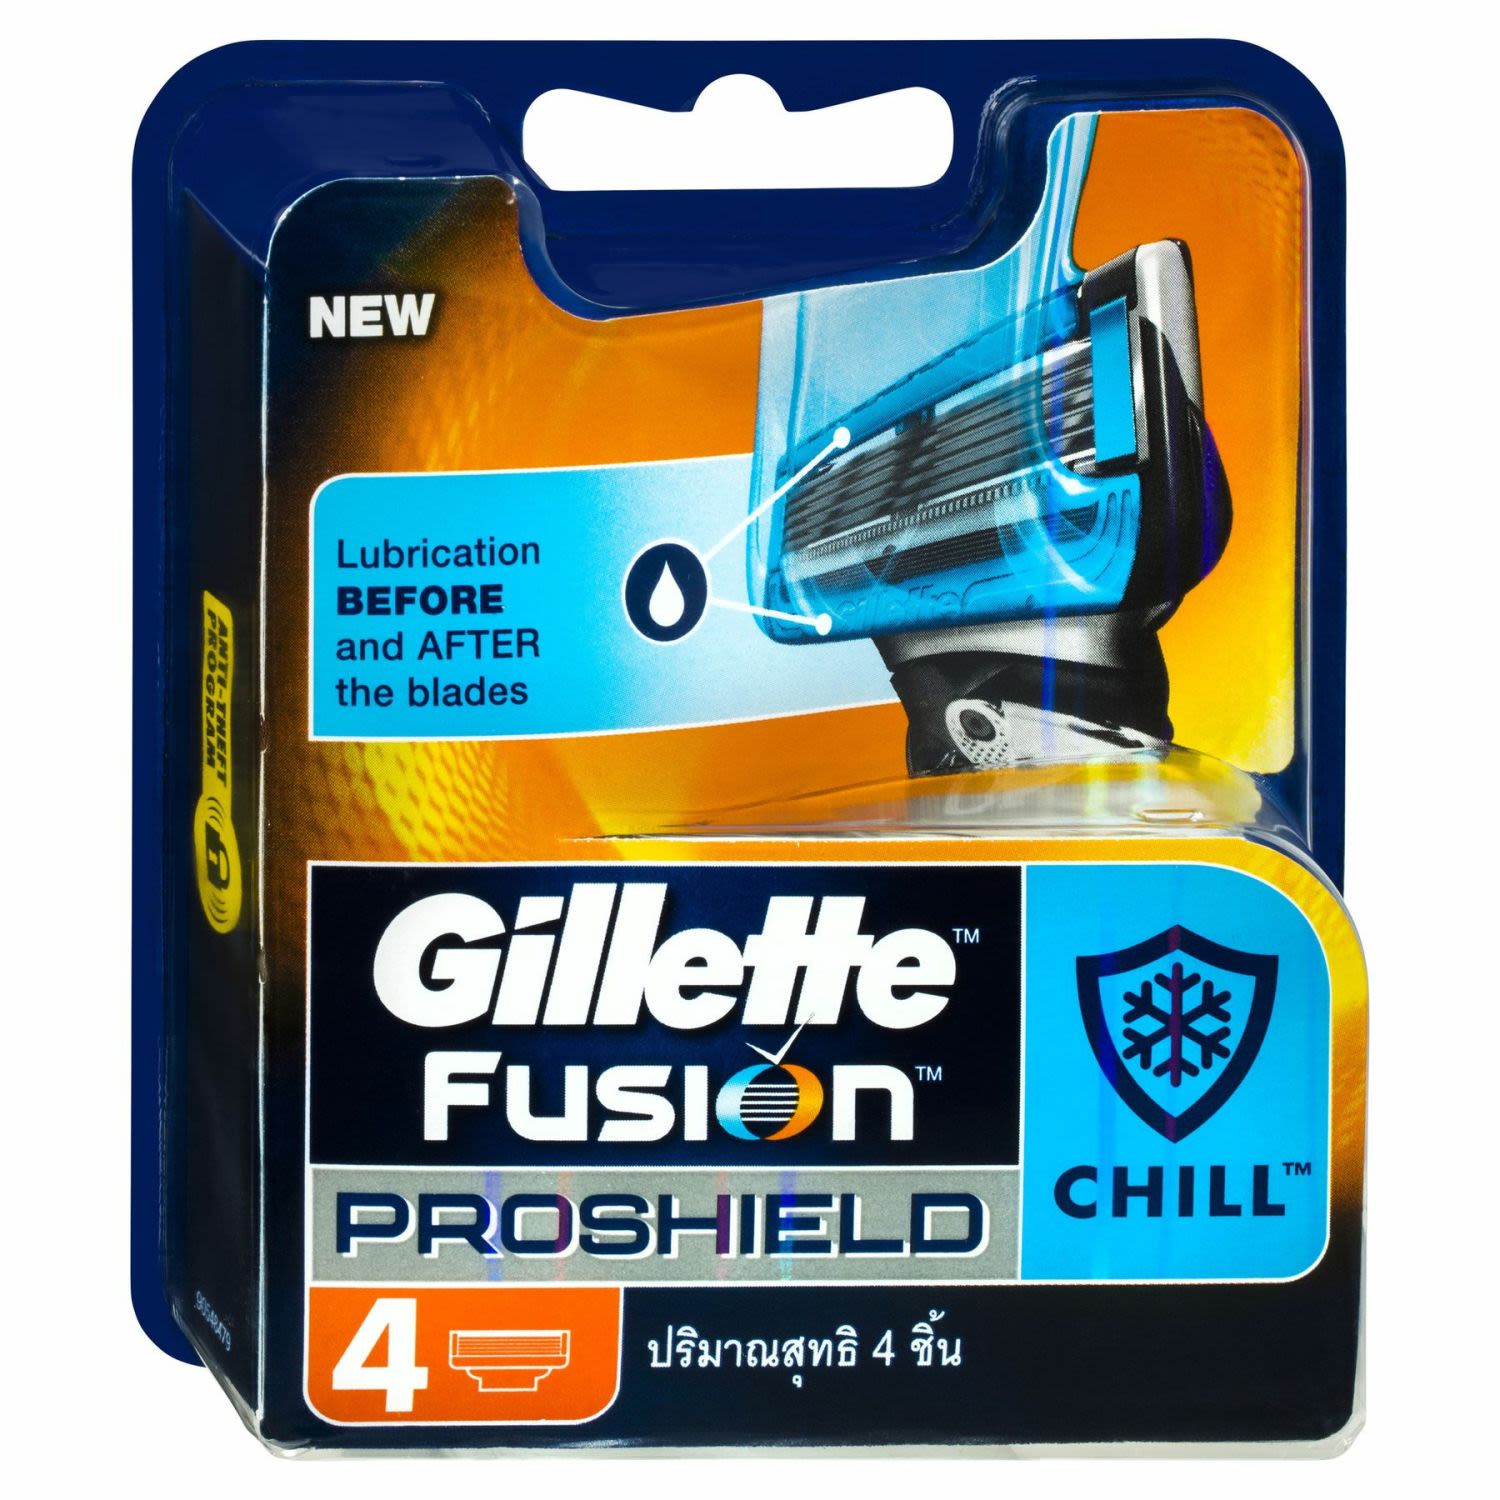 Gillette Fusion Proshield Chill Refill Razor Blades, 4 Each